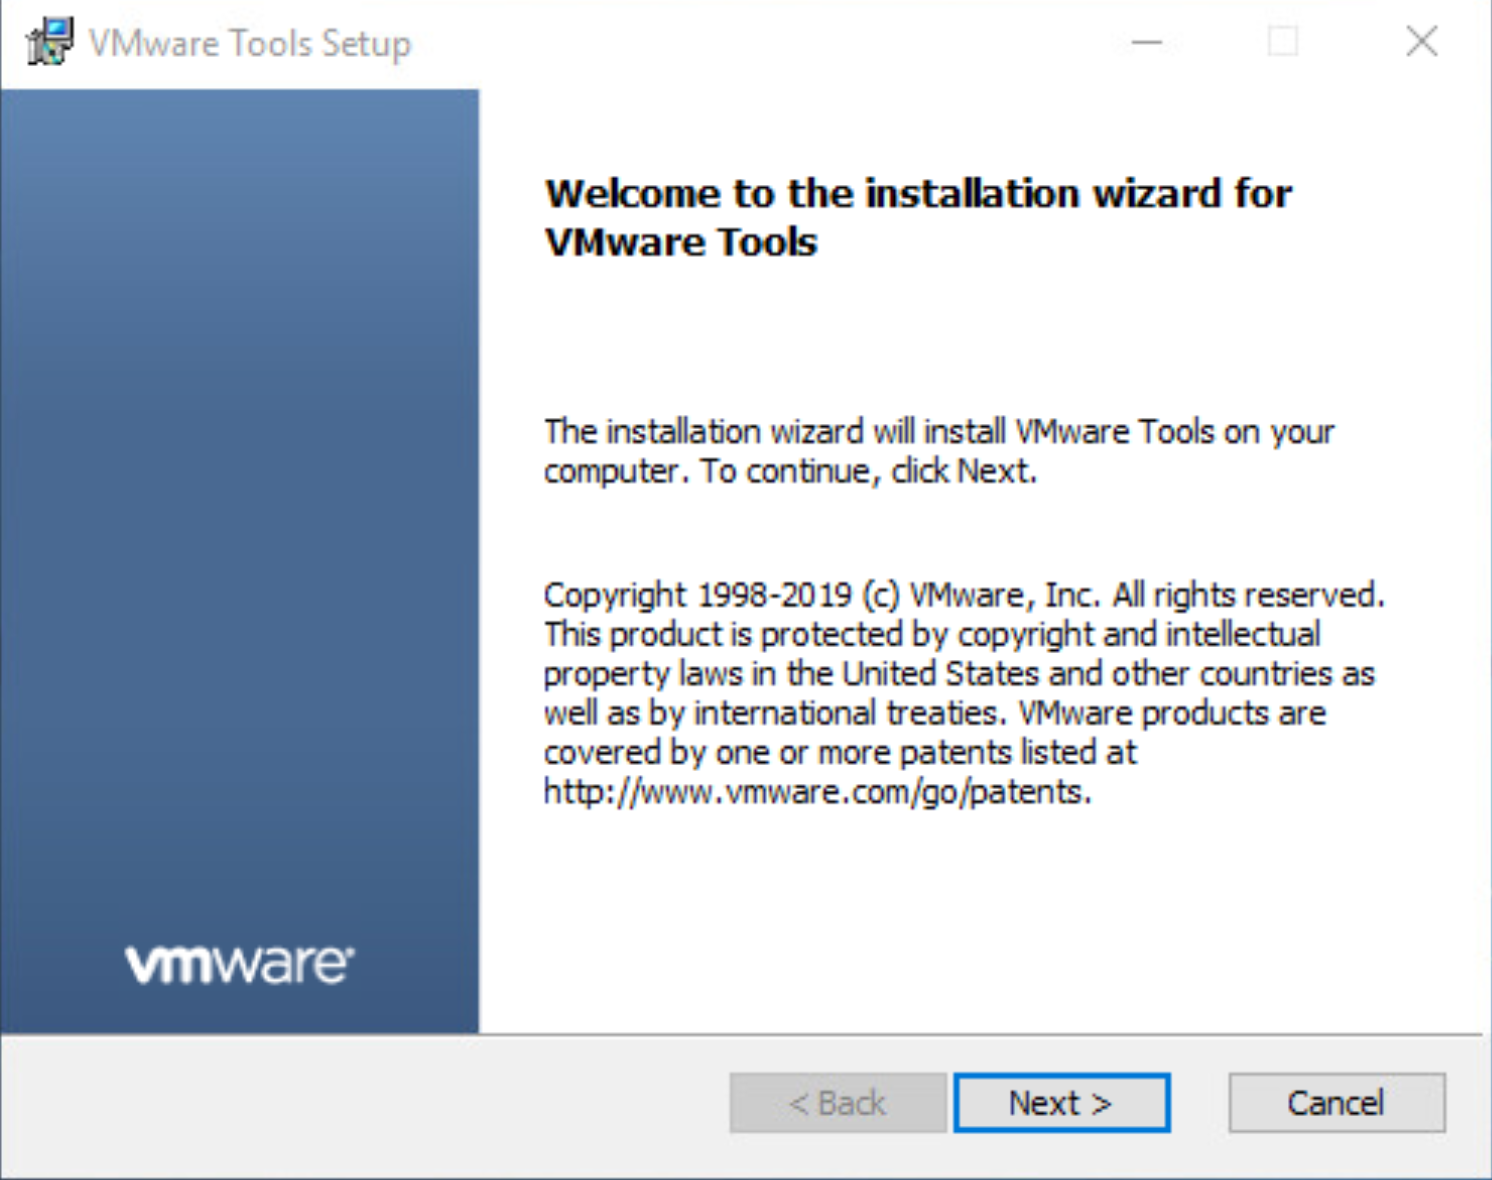 包含安裝精靈的 VMware 工具安裝視窗螢幕擷取畫面。